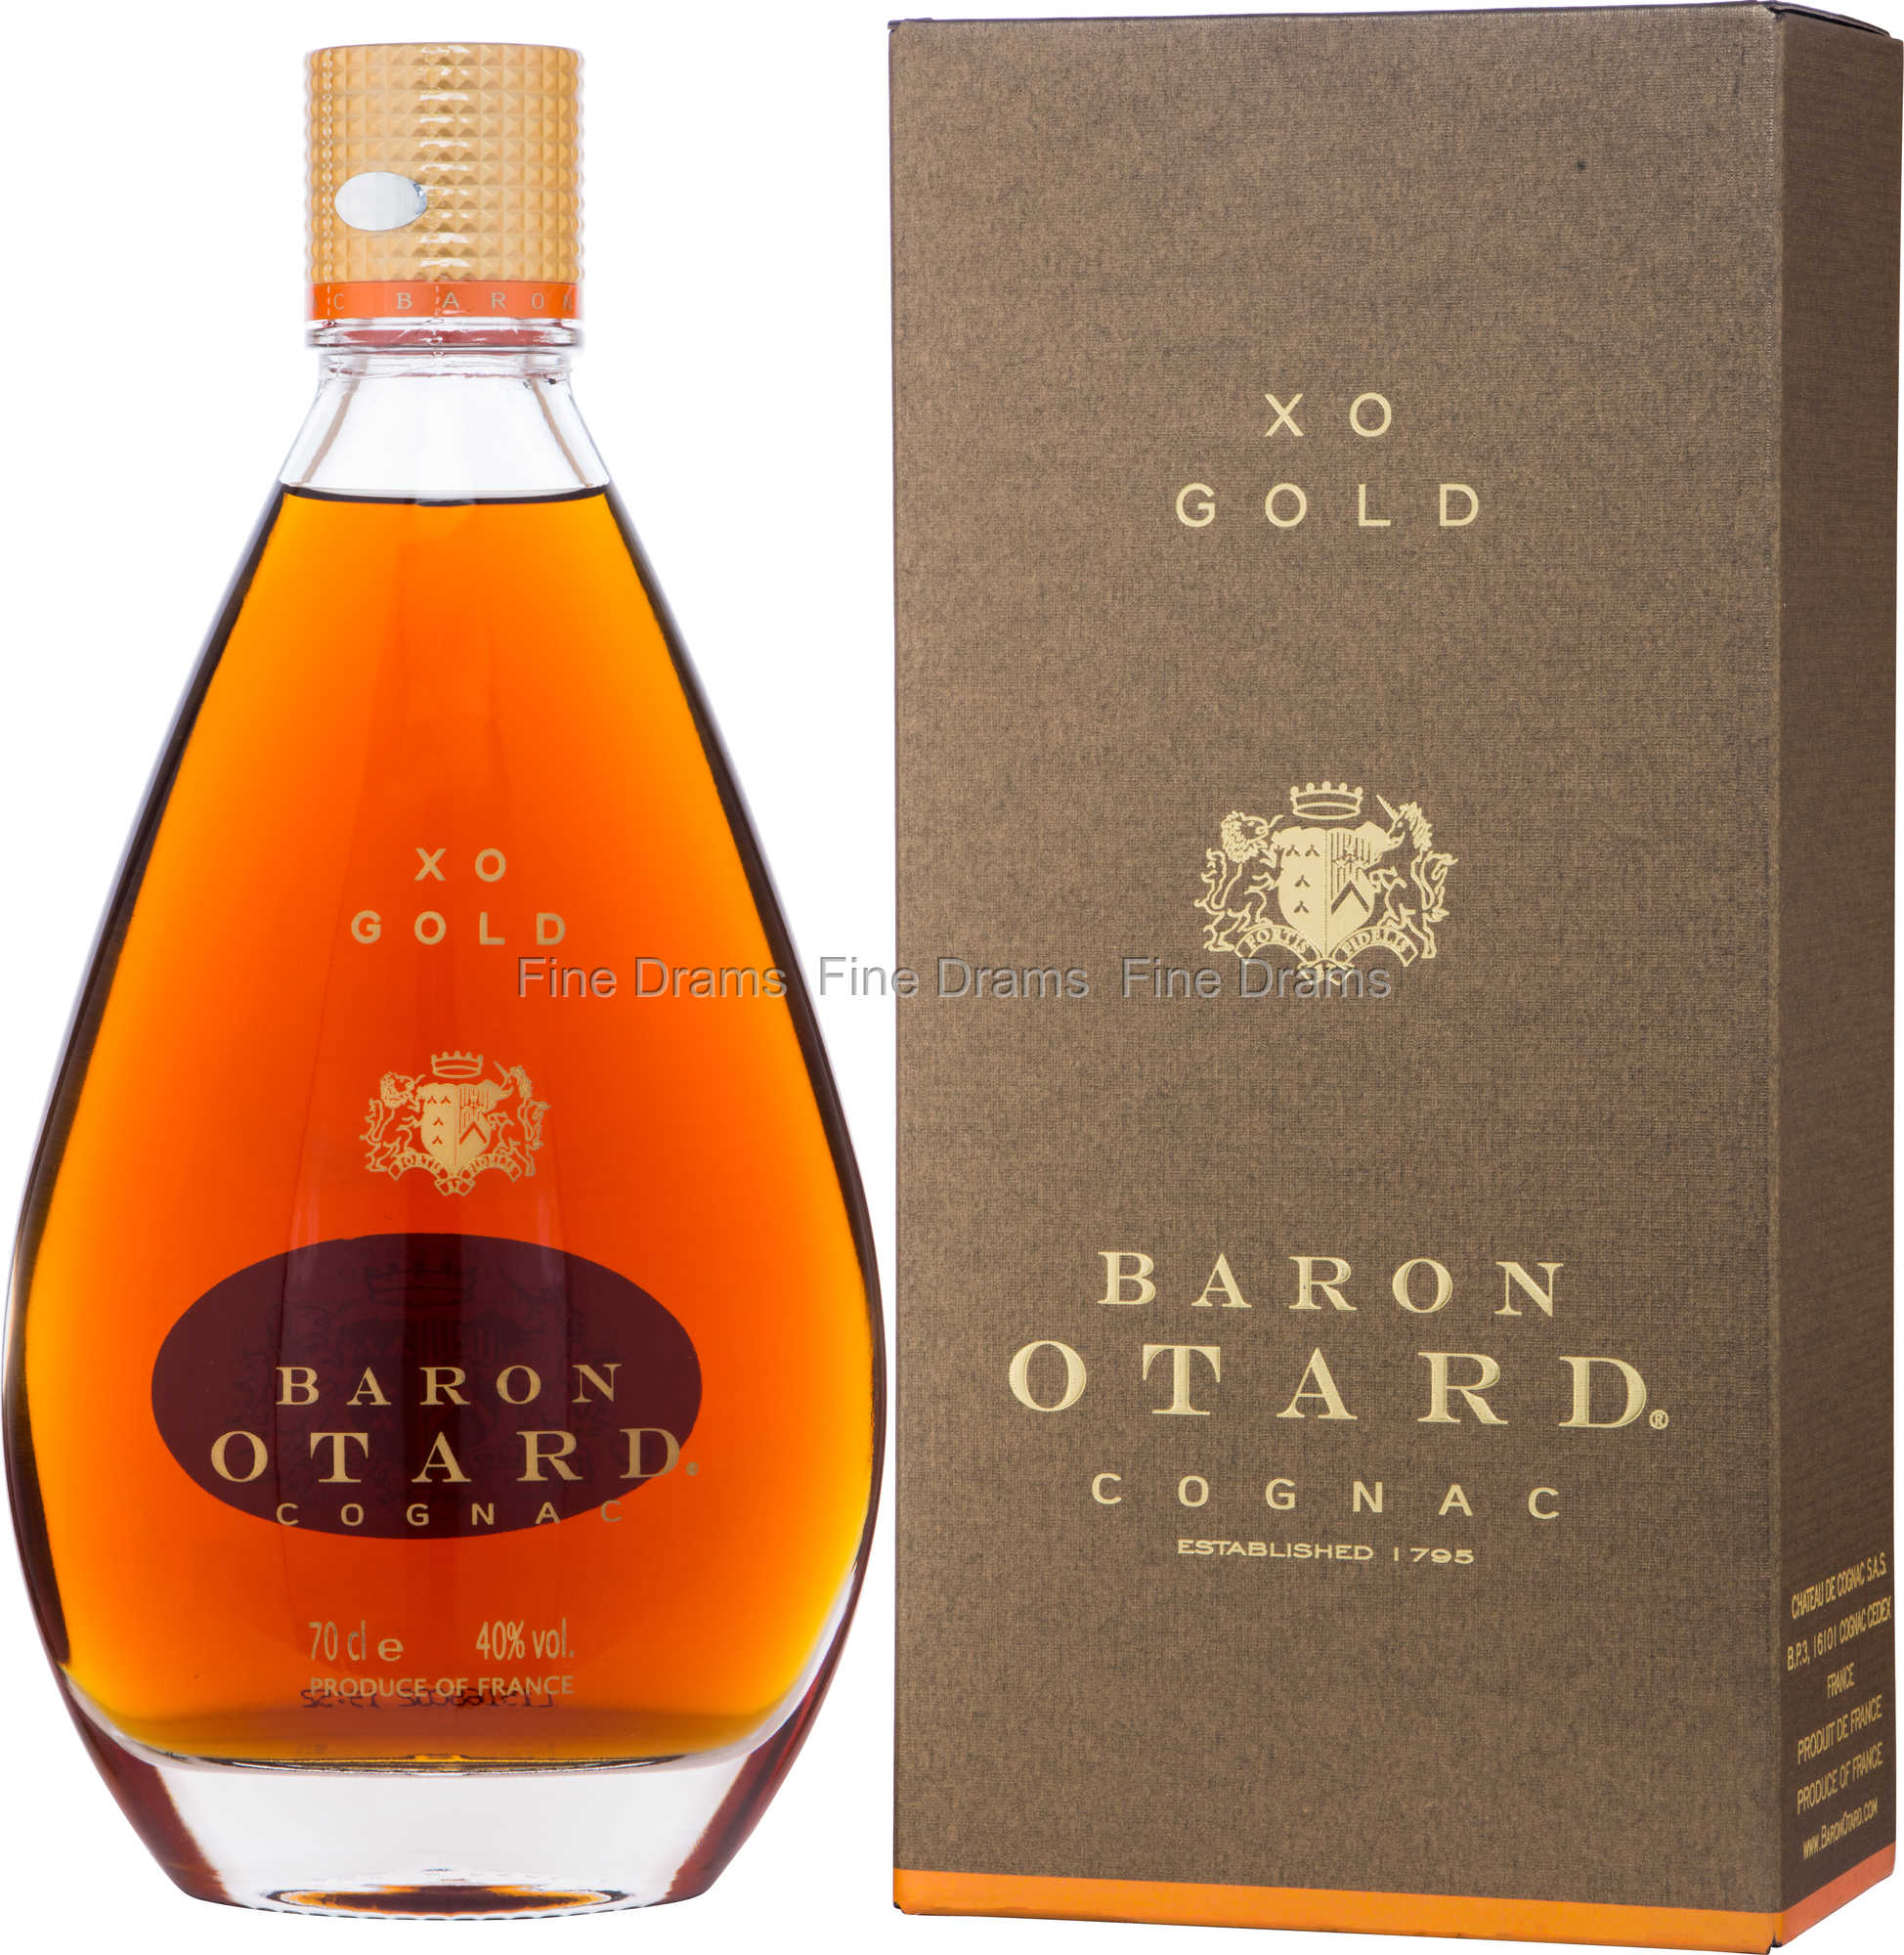 XO Gold Cognac Baron Otard I La Cognatheque